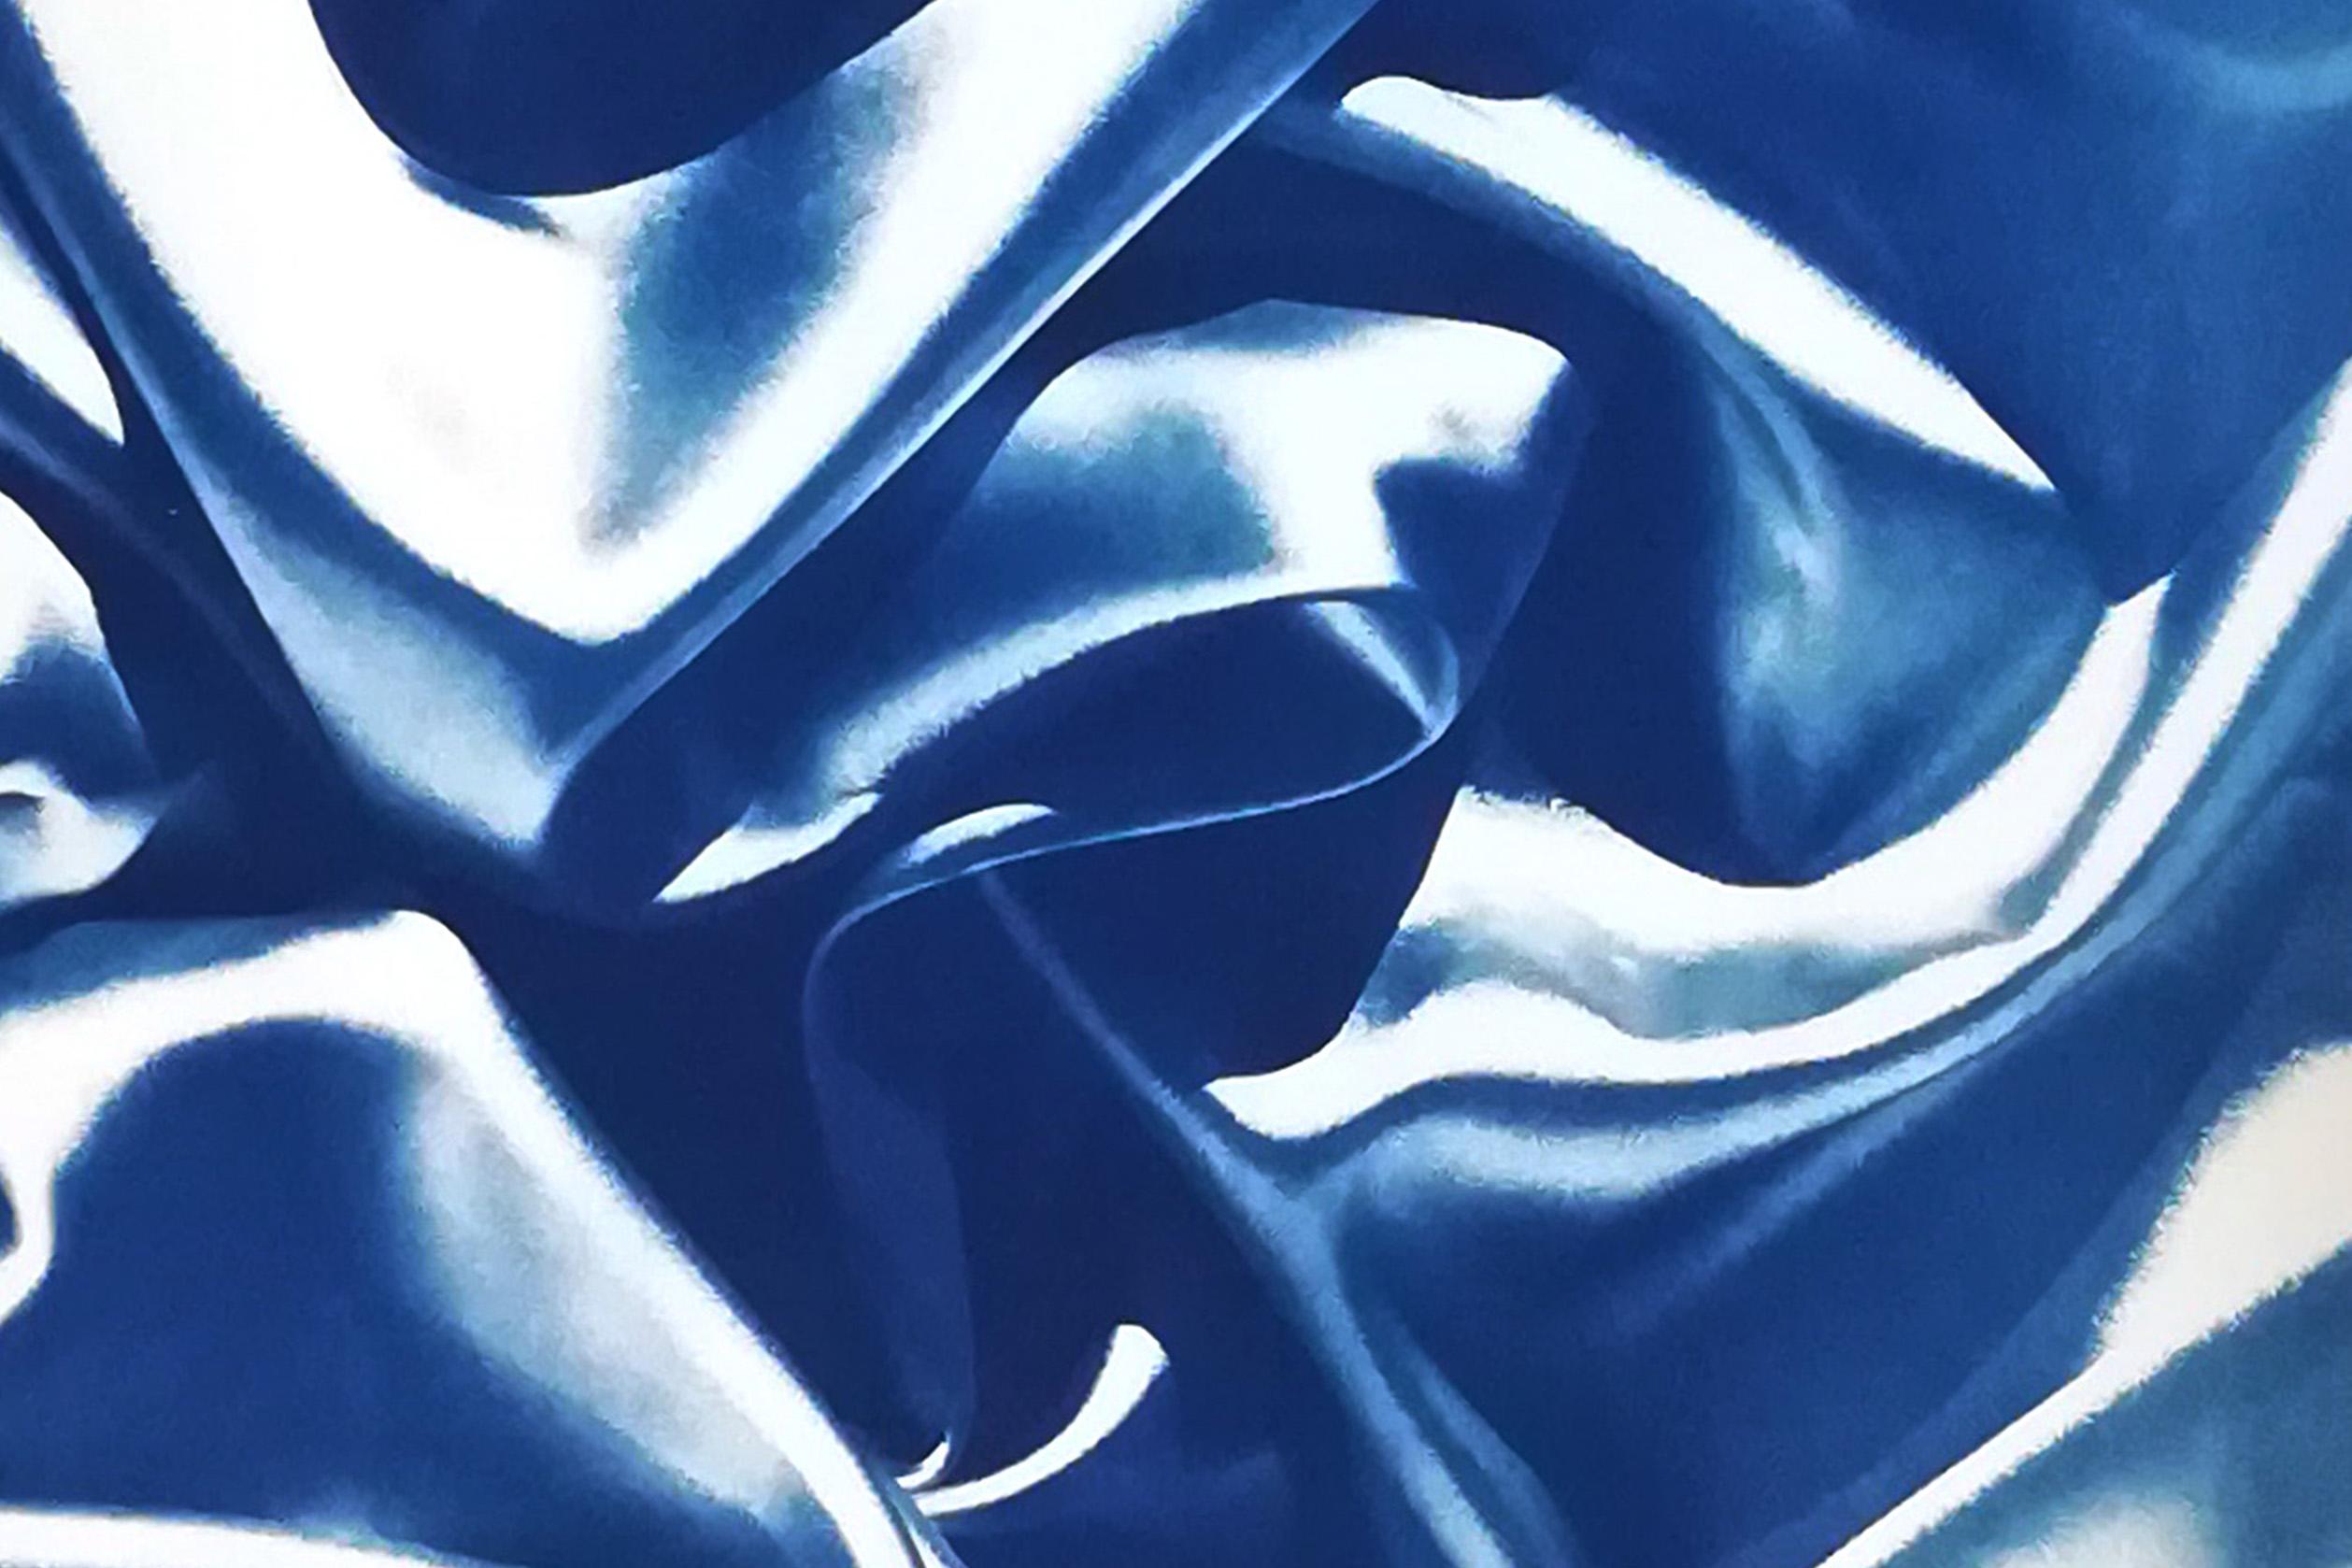 Dies ist eine exklusive handgedruckte Cyanotypie in limitierter Auflage.

Einzelheiten:
+ Titel: Late Night Adventurous Duo (of Silks)
+ Jahr: 2022
+ Auflagenhöhe: 20
+ Gestempelt und mit Echtheitszertifikat versehen
+ Maße: 100x140 cm (40 x 55 in.)